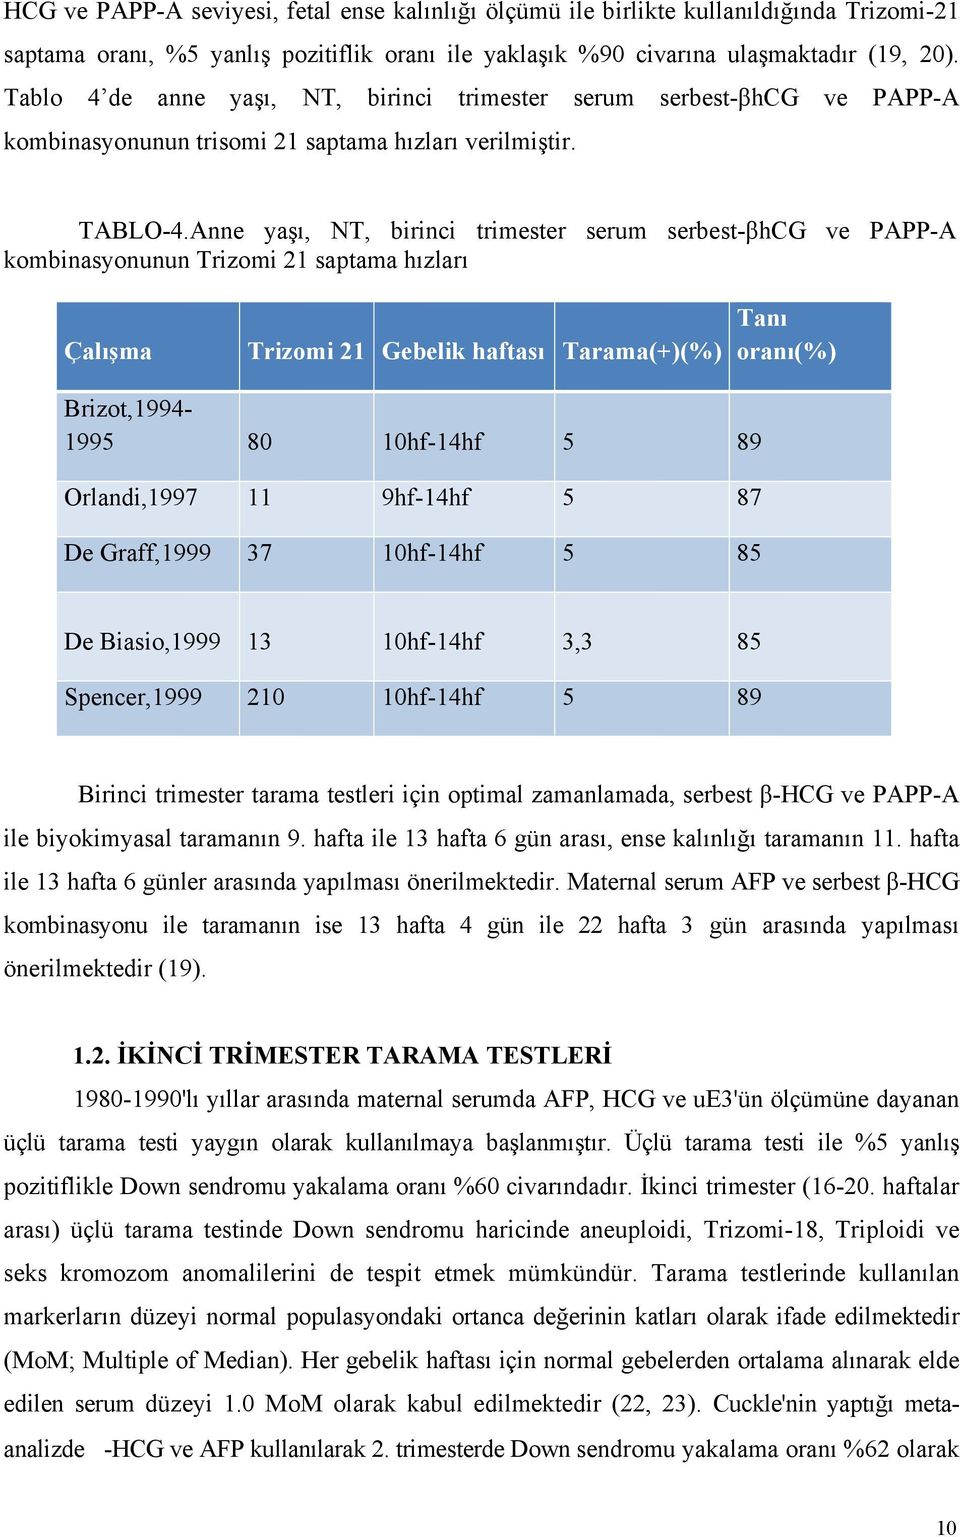 Anne yaşı, NT, birinci trimester serum serbest-βhcg ve PAPP-A kombinasyonunun Trizomi 21 saptama hızları Çalışma Trizomi 21 Gebelik haftası Tarama(+)(%) Tanı oranı(%) Brizot,1994-1995 80 10hf-14hf 5